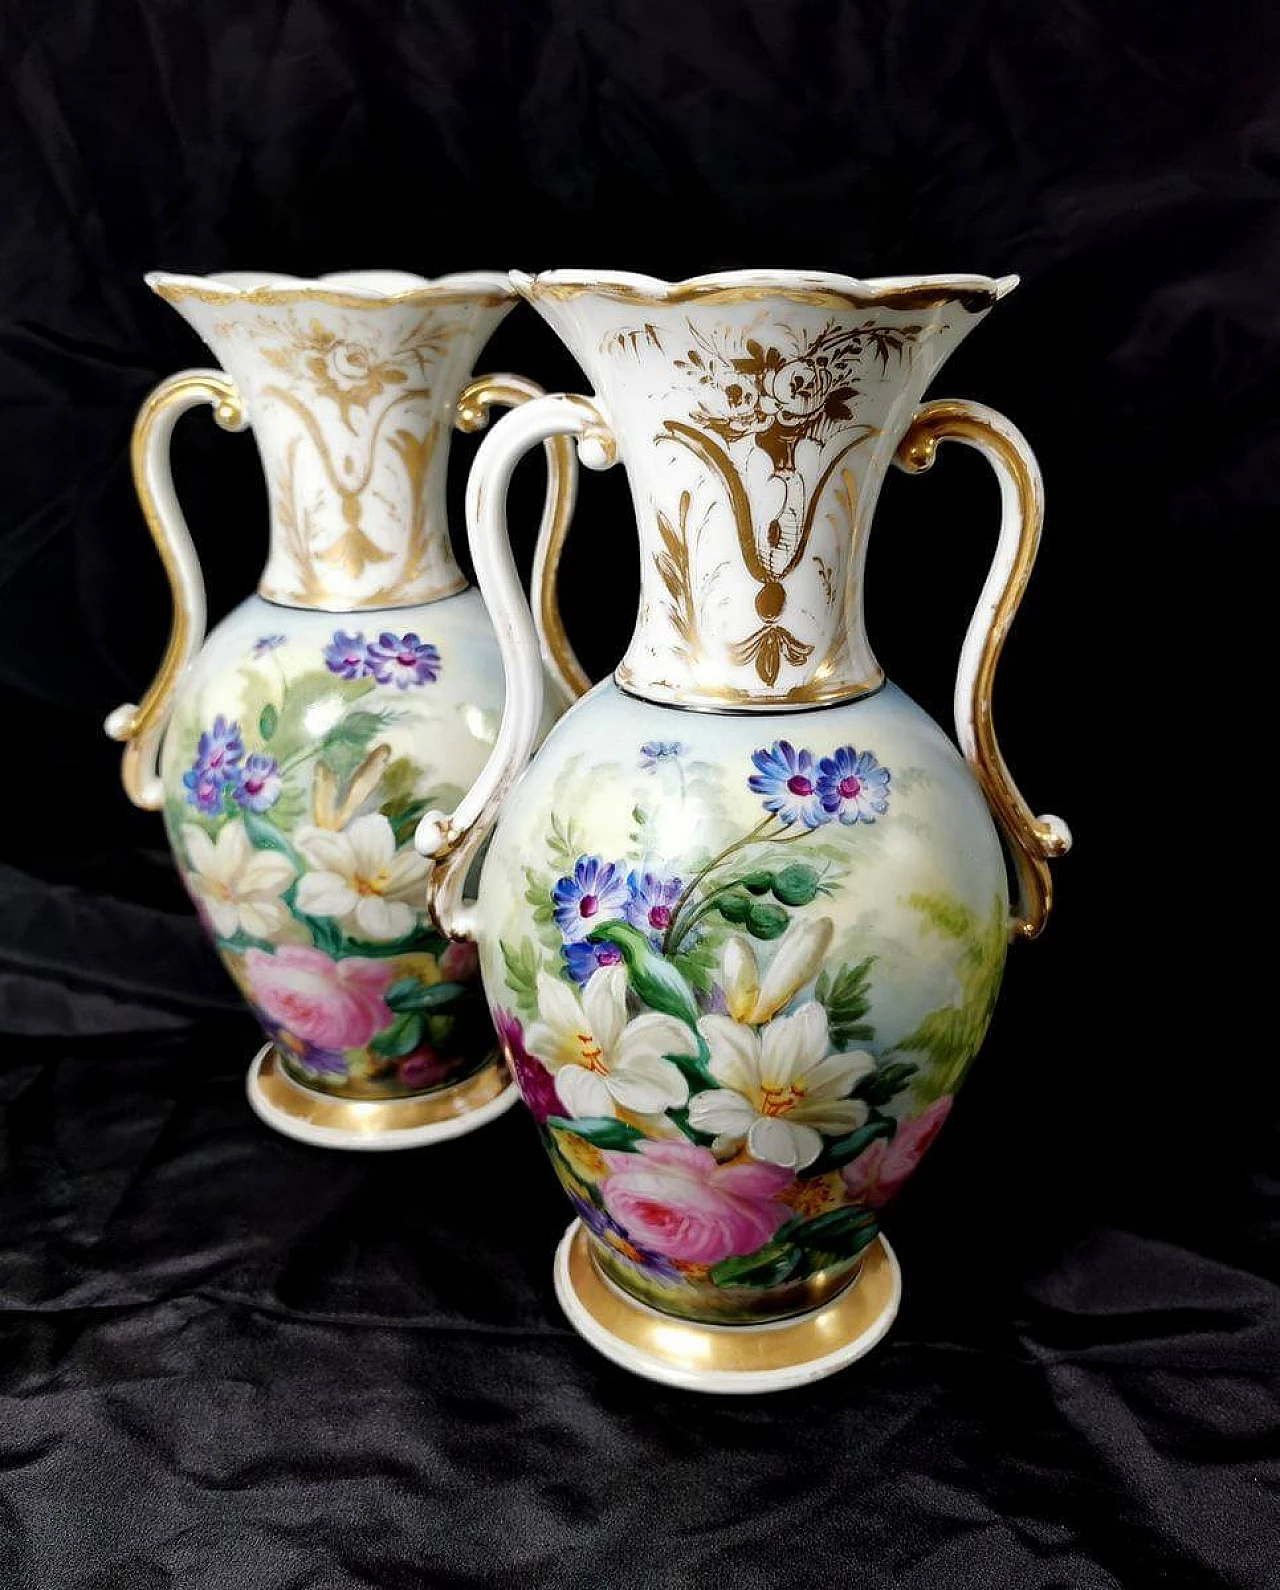 Pair of hand-painted De Paris porcelain vases, 19th century 1463935